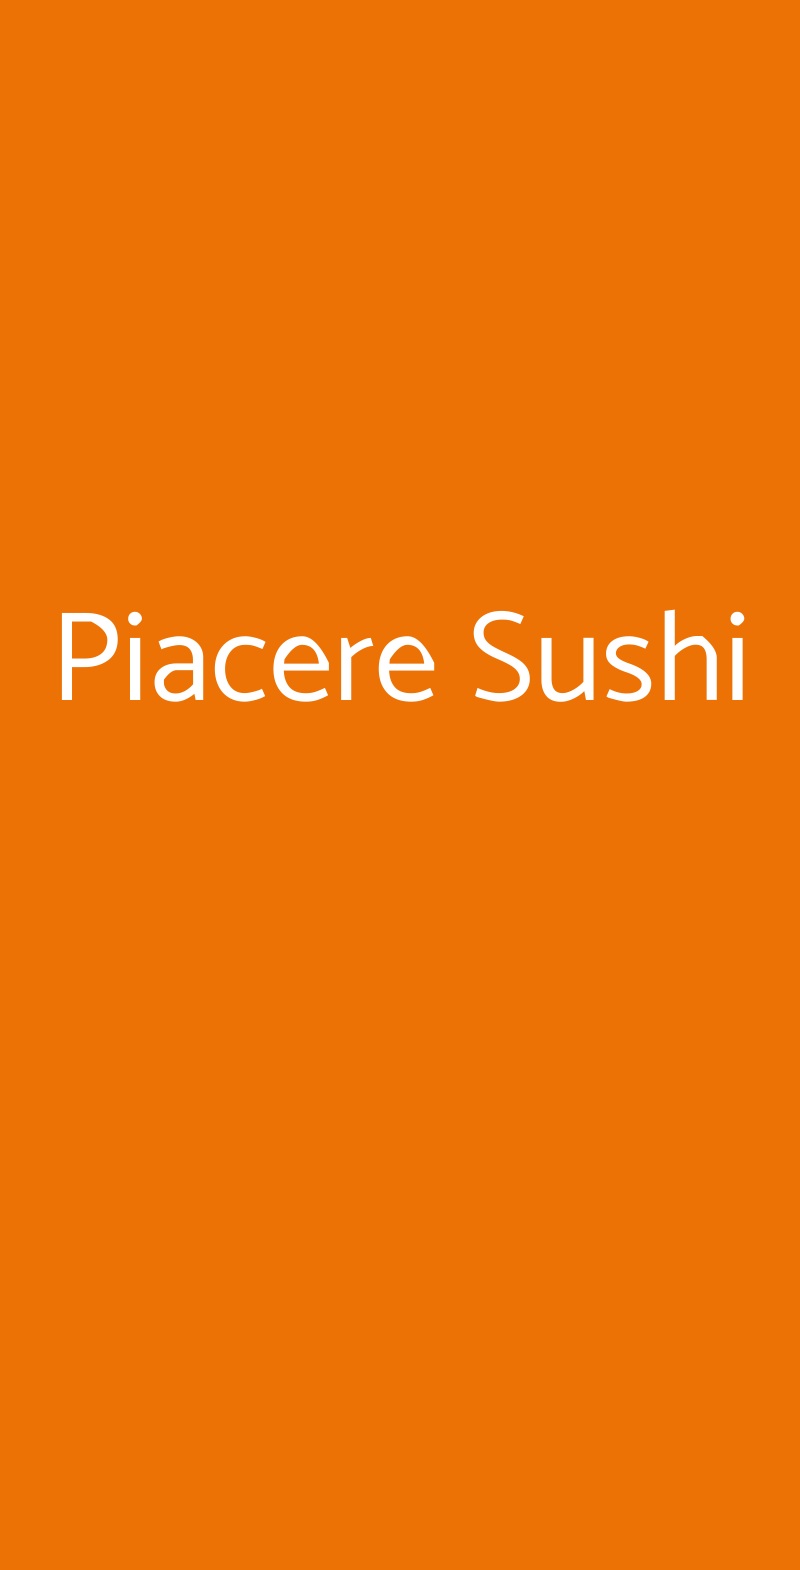 Piacere Sushi Milano menù 1 pagina